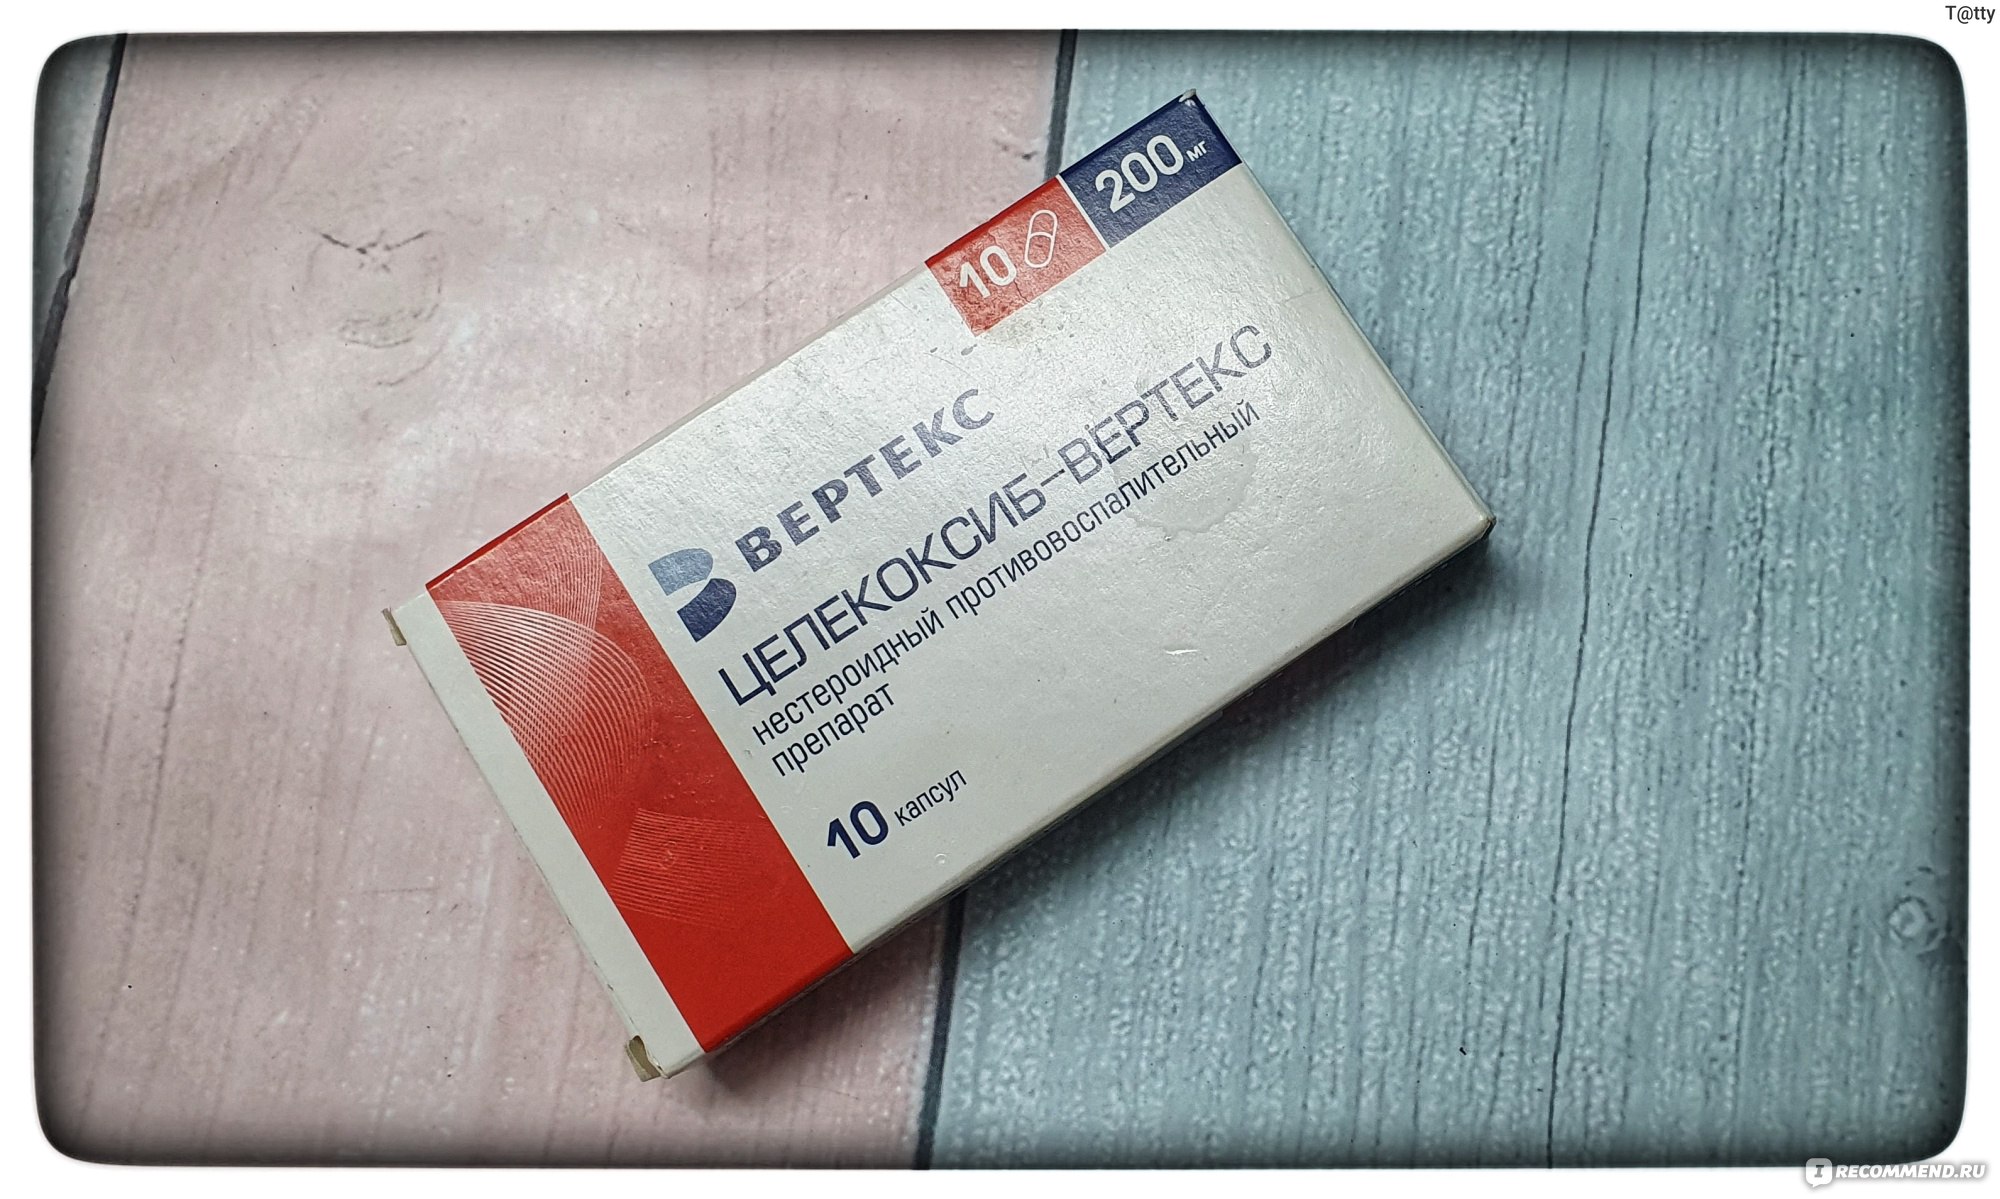 Нестероидный противовоспалительный препарат Вертекс Целекоксиб, 200 мг .